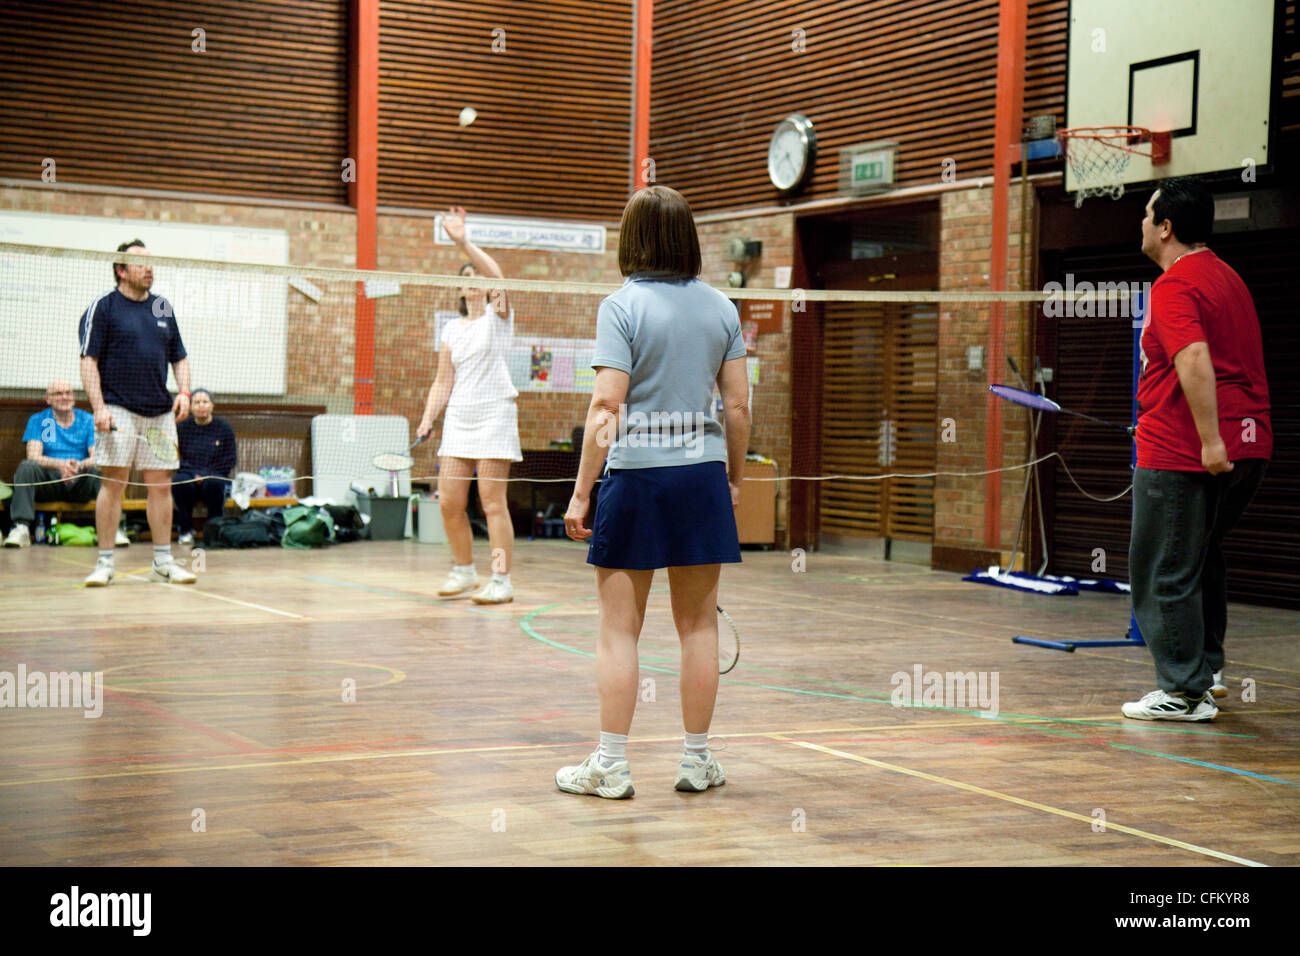 Les gens jouent à un jeu de double badminton à leur club local, Newmarket Suffolk UK Banque D'Images